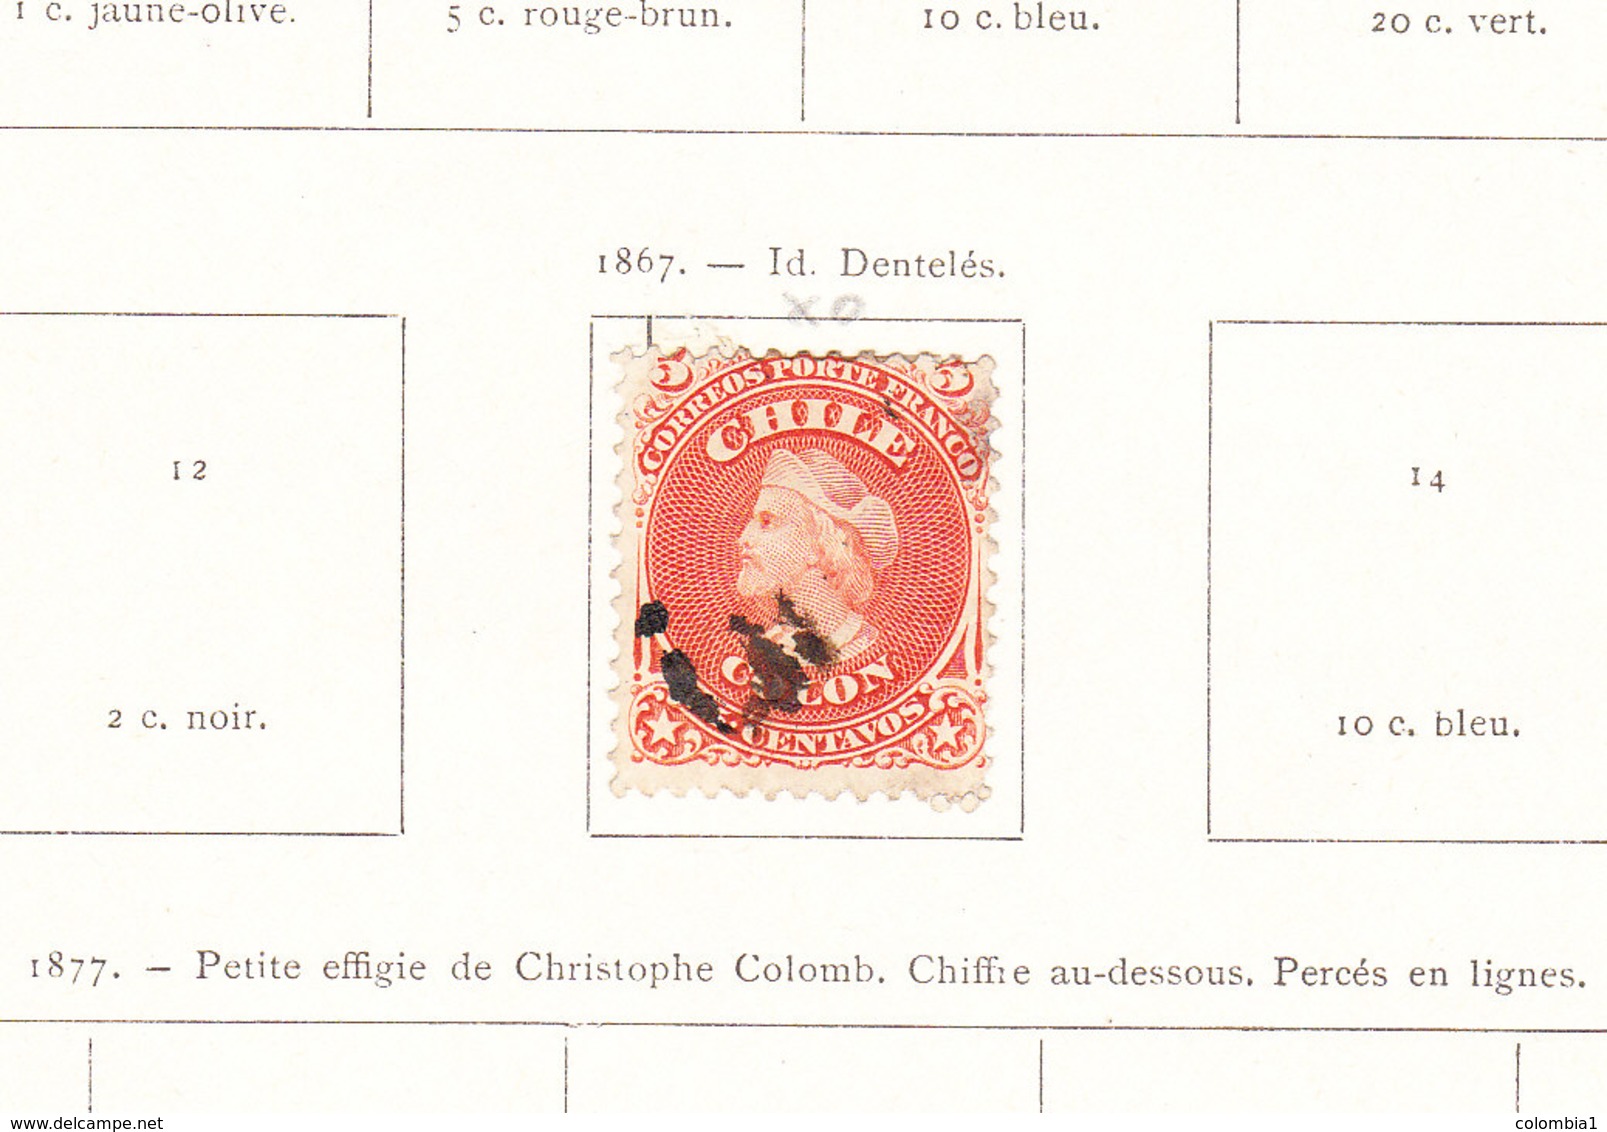 CHILI Timbres anciens et Timbres télégraphes à partir de 1867 sur feuilles d'album